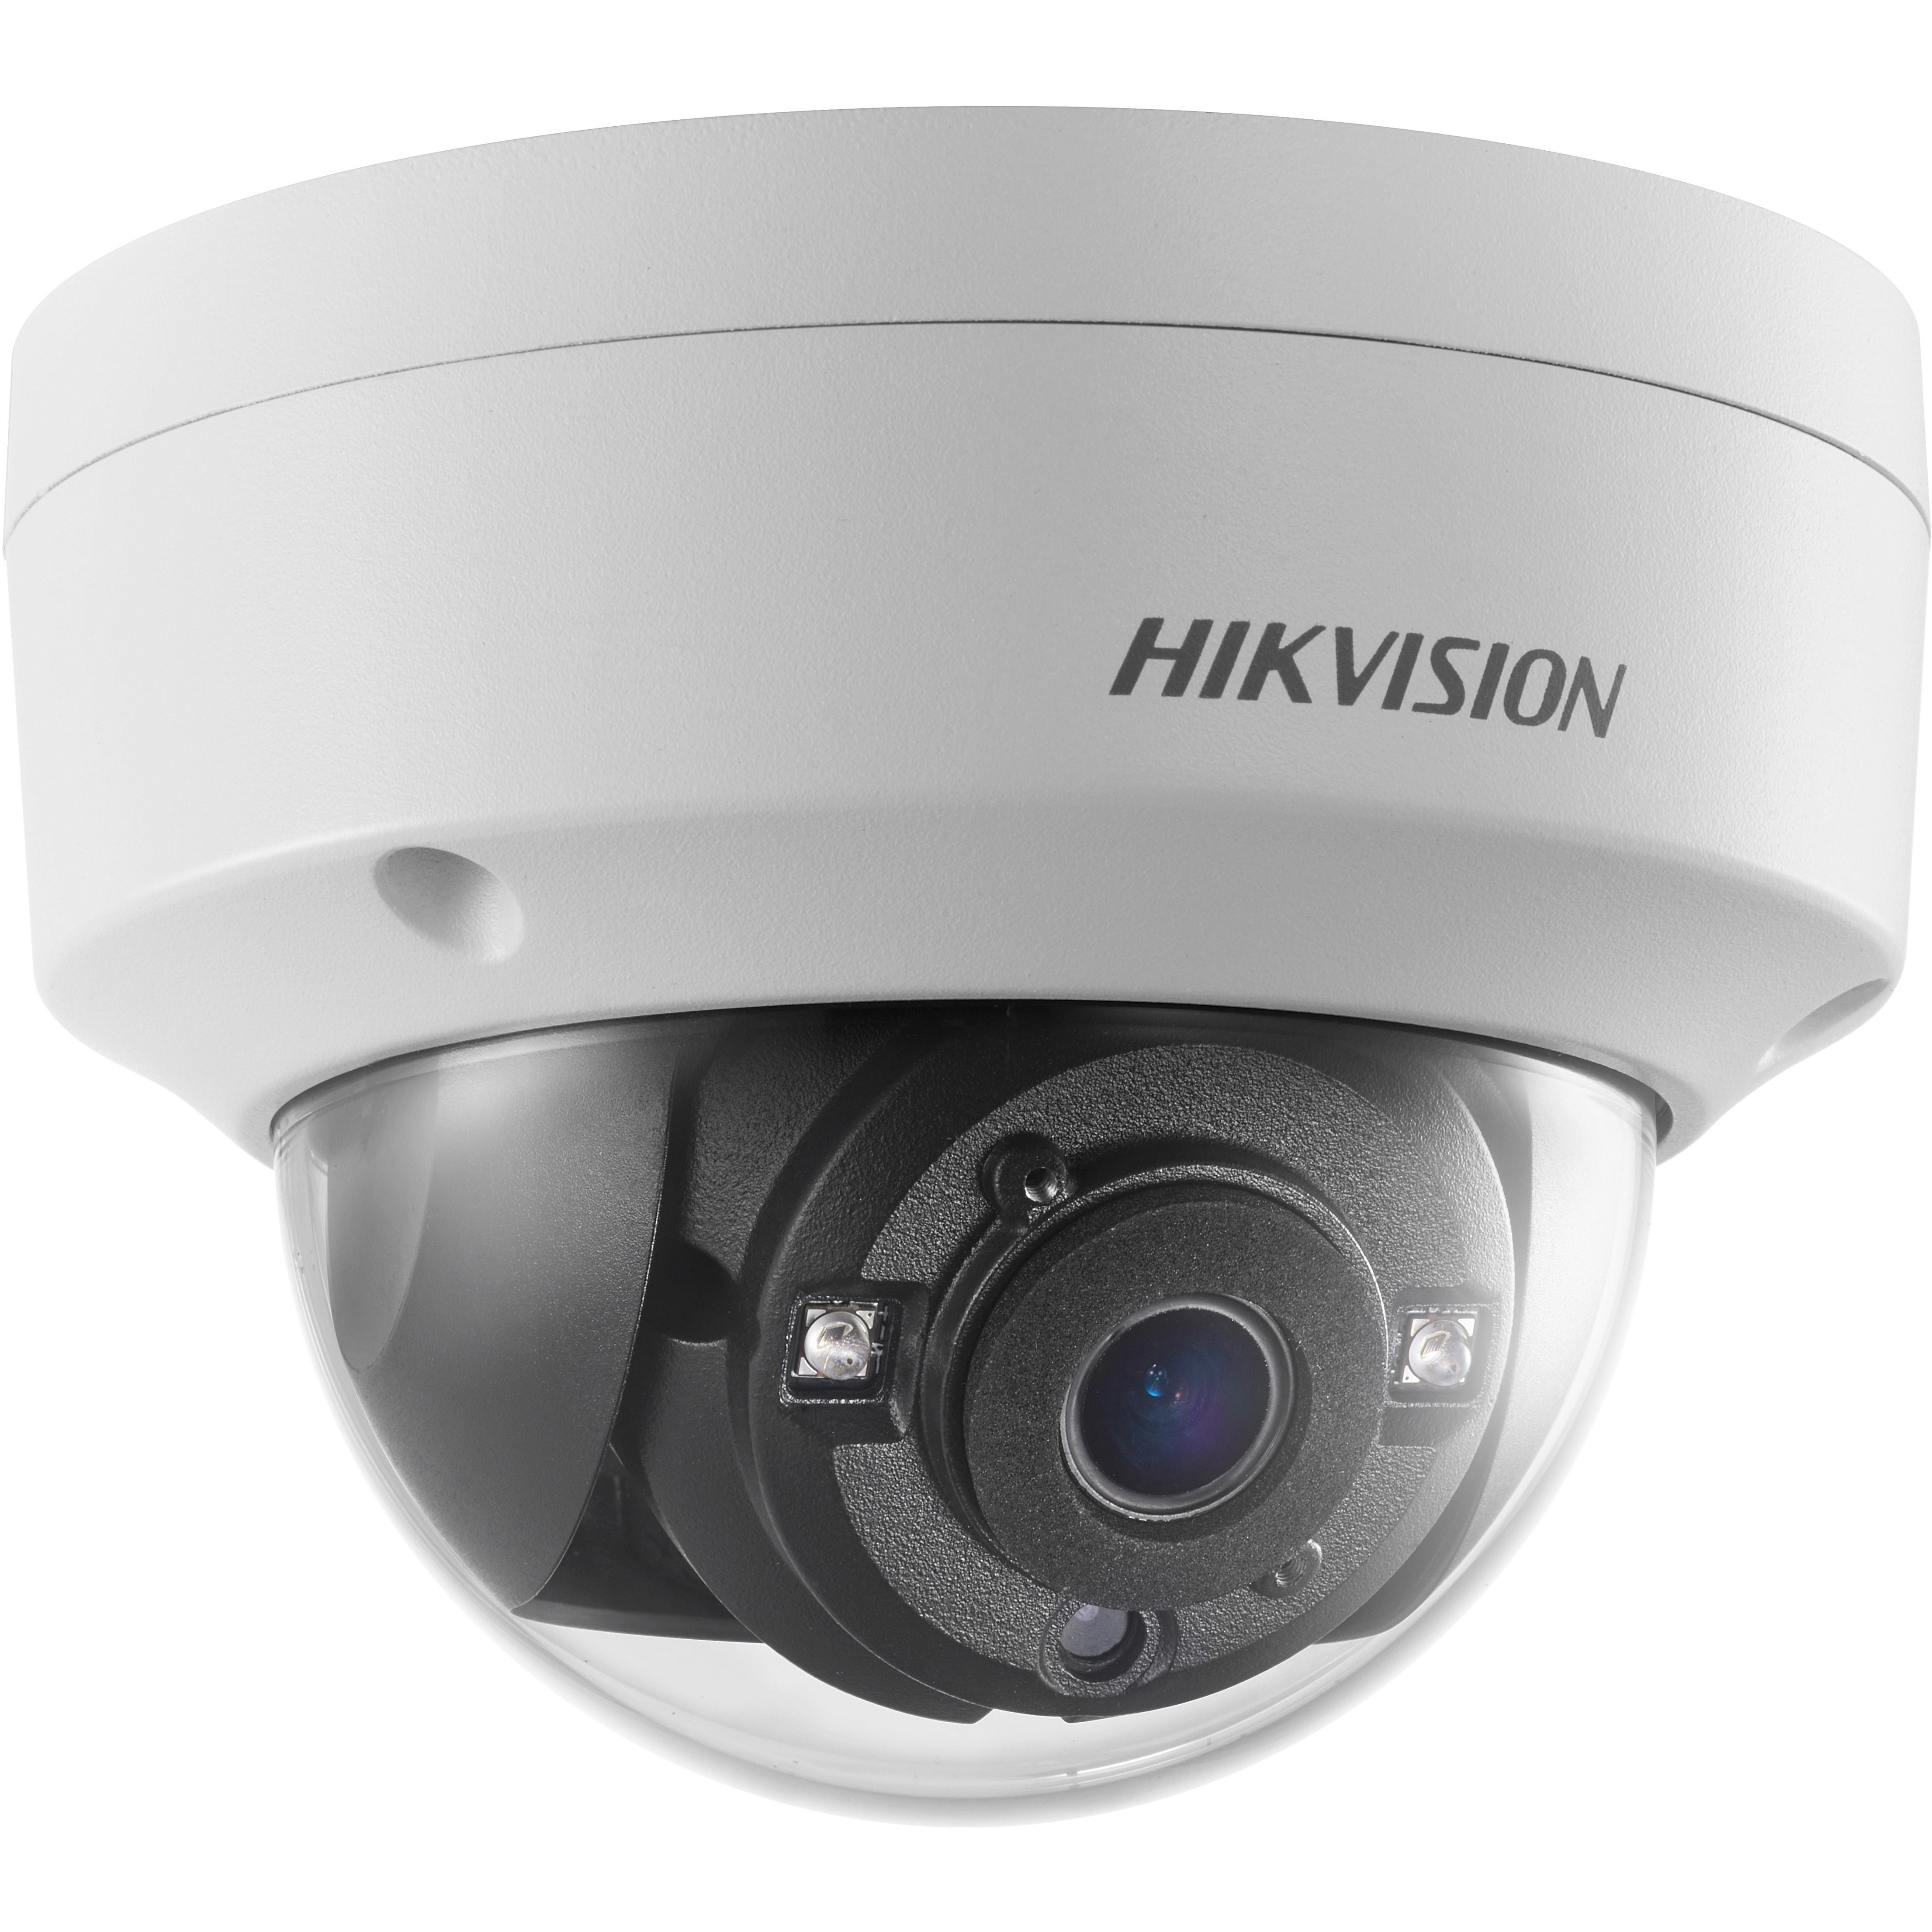 Hikvision DS-2CE57D3T-VPITF 2.8MM 2 MP EXIR Dome Camera, Outdoor, 70M IR Range, WDR, IP67